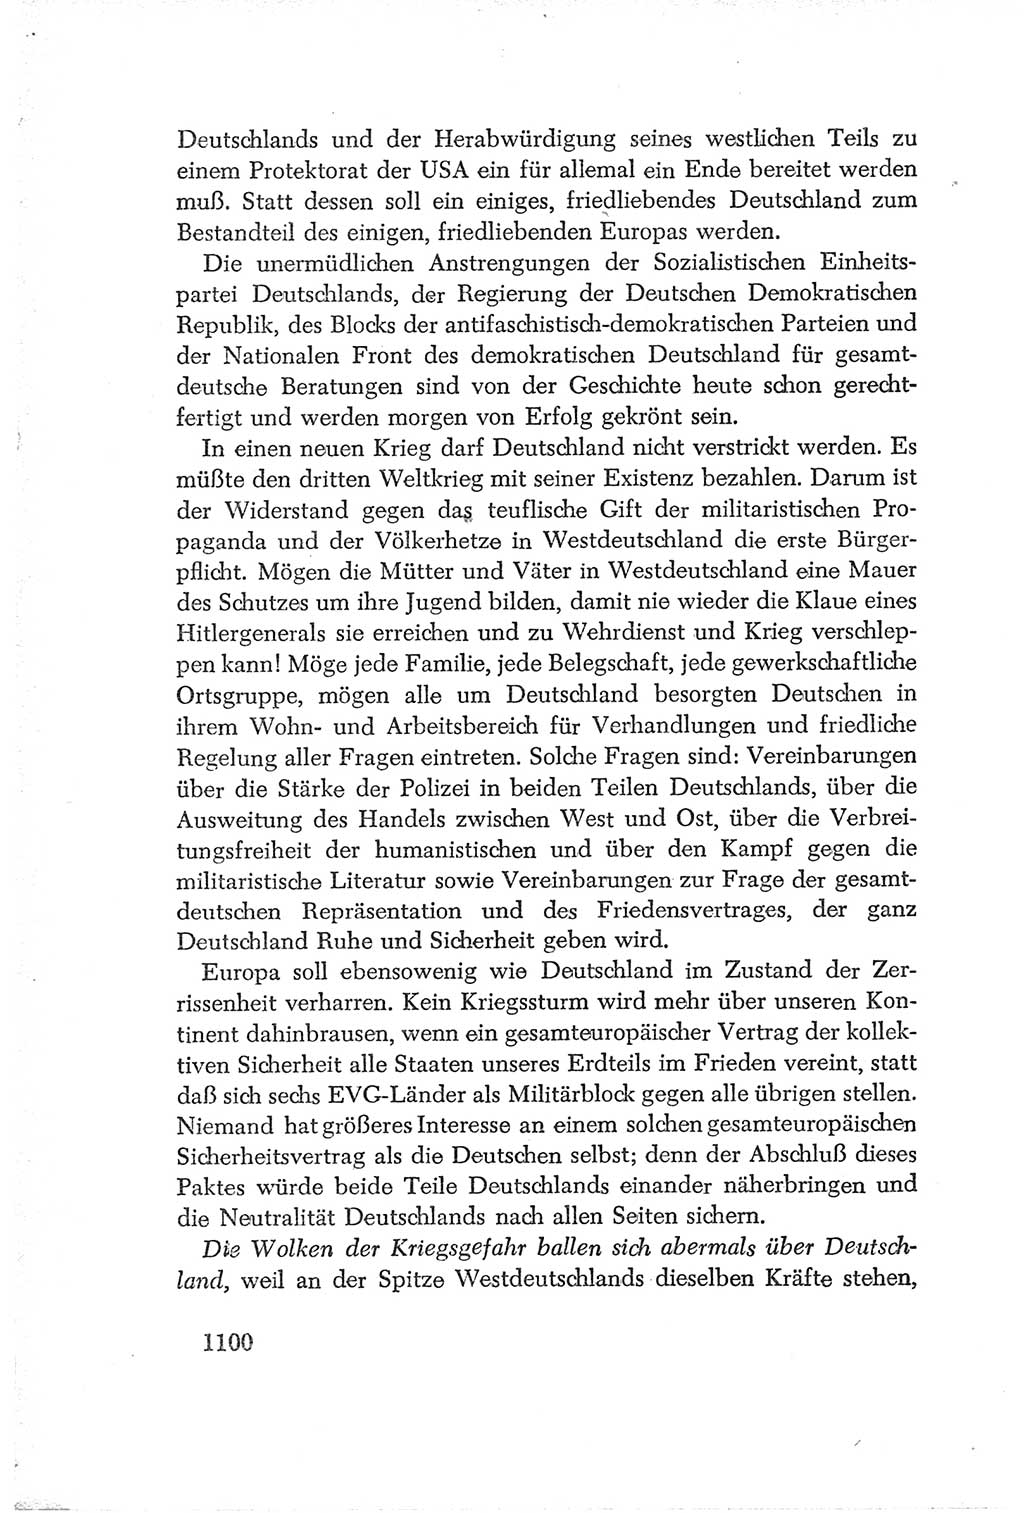 Protokoll der Verhandlungen des Ⅳ. Parteitages der Sozialistischen Einheitspartei Deutschlands (SED) [Deutsche Demokratische Republik (DDR)] 1954, Seite 1100